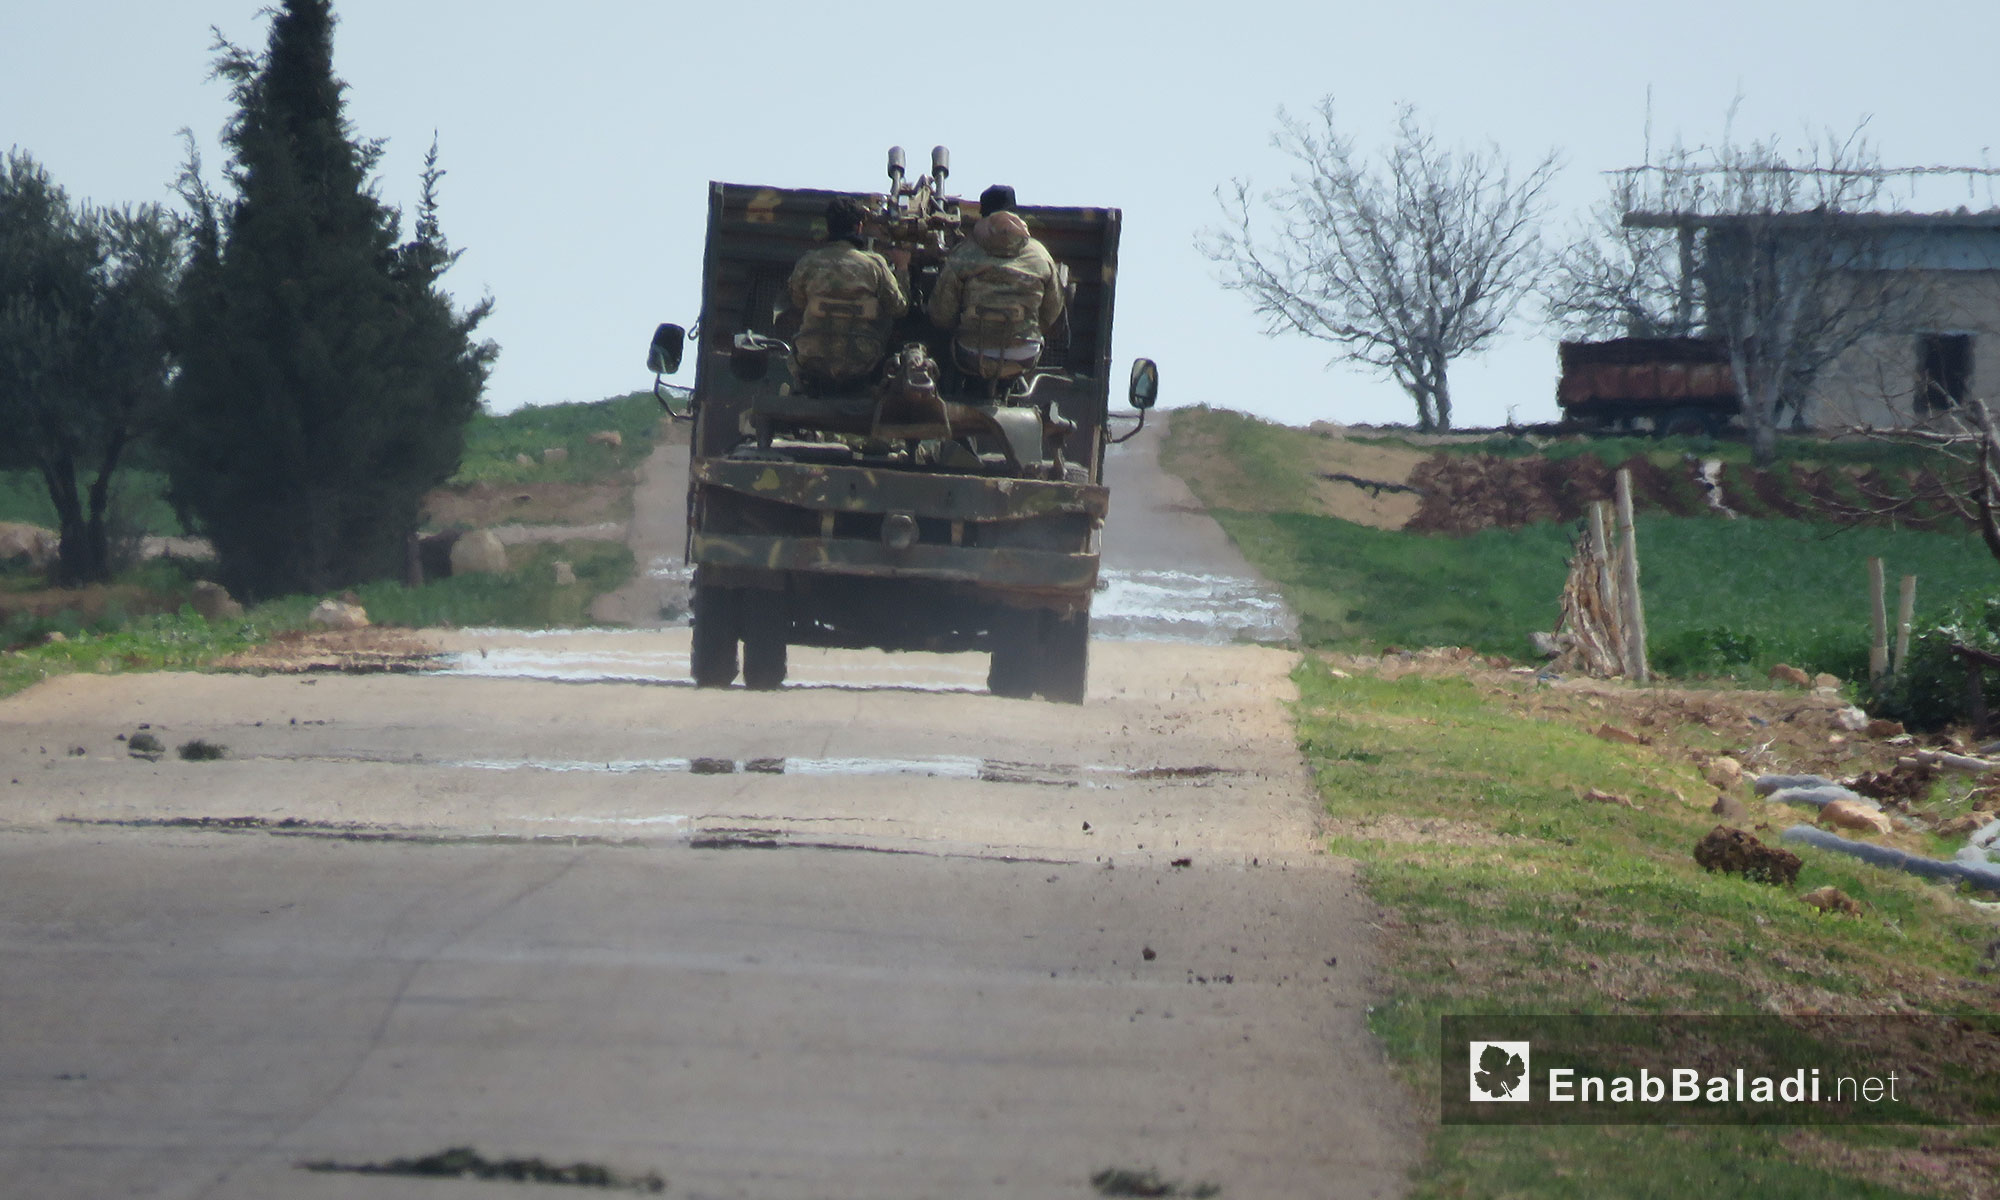 شاحنة تحمل جنود من الجيش الحر في بلدة كرناز بعد السيطرة عليها - 14 آذار 2018 (عنب بلدي)